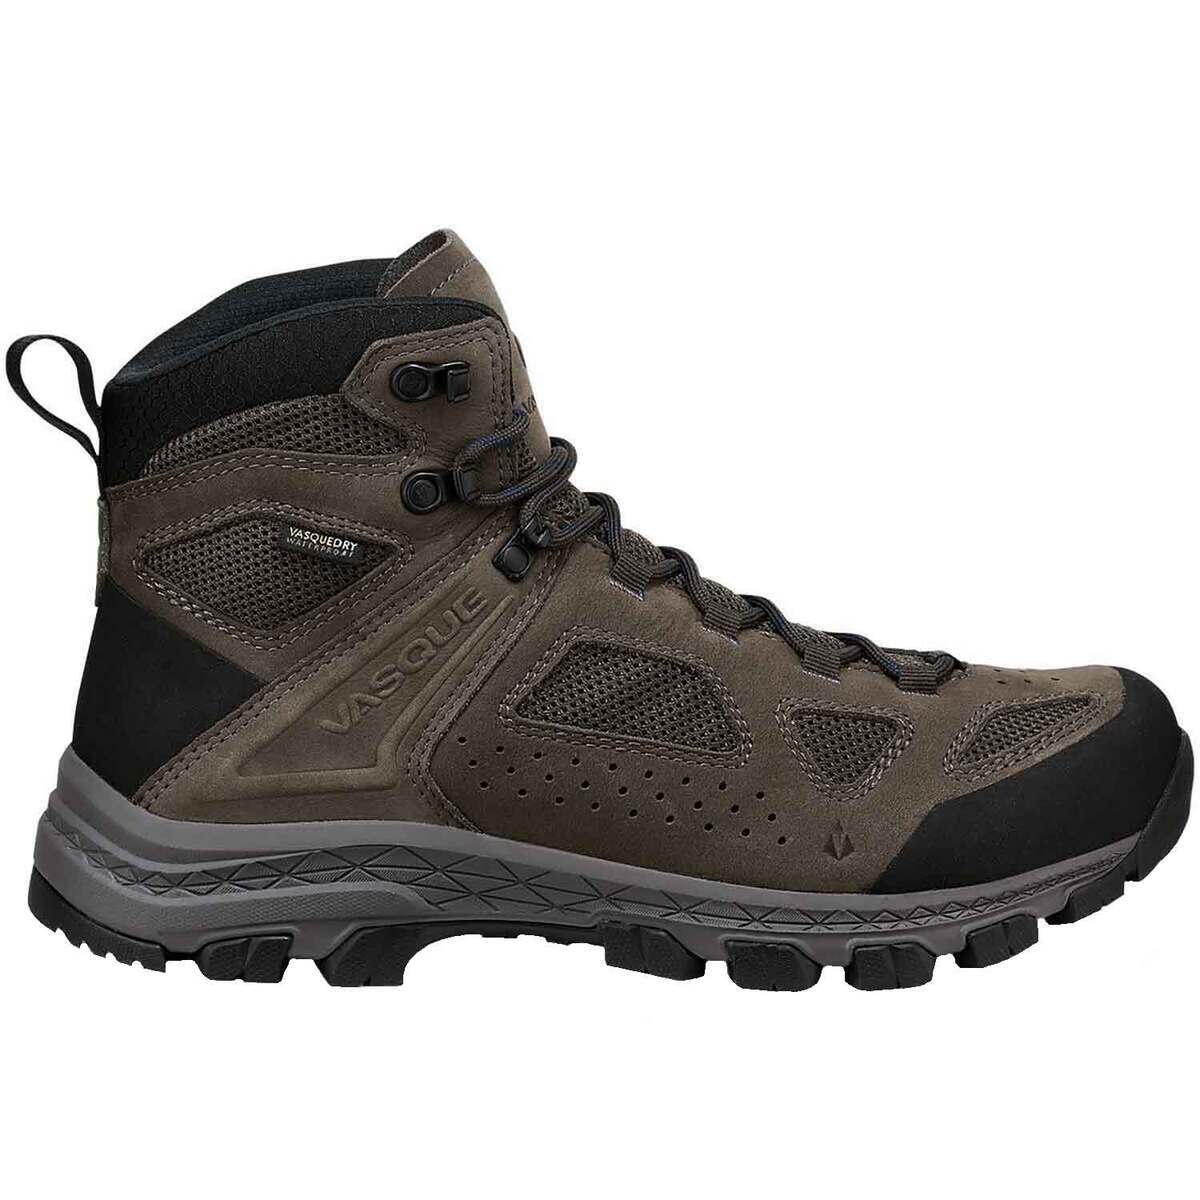 Vasque Men's Breeze Waterproof Mid Hiking Boots | Sportsman's Warehouse